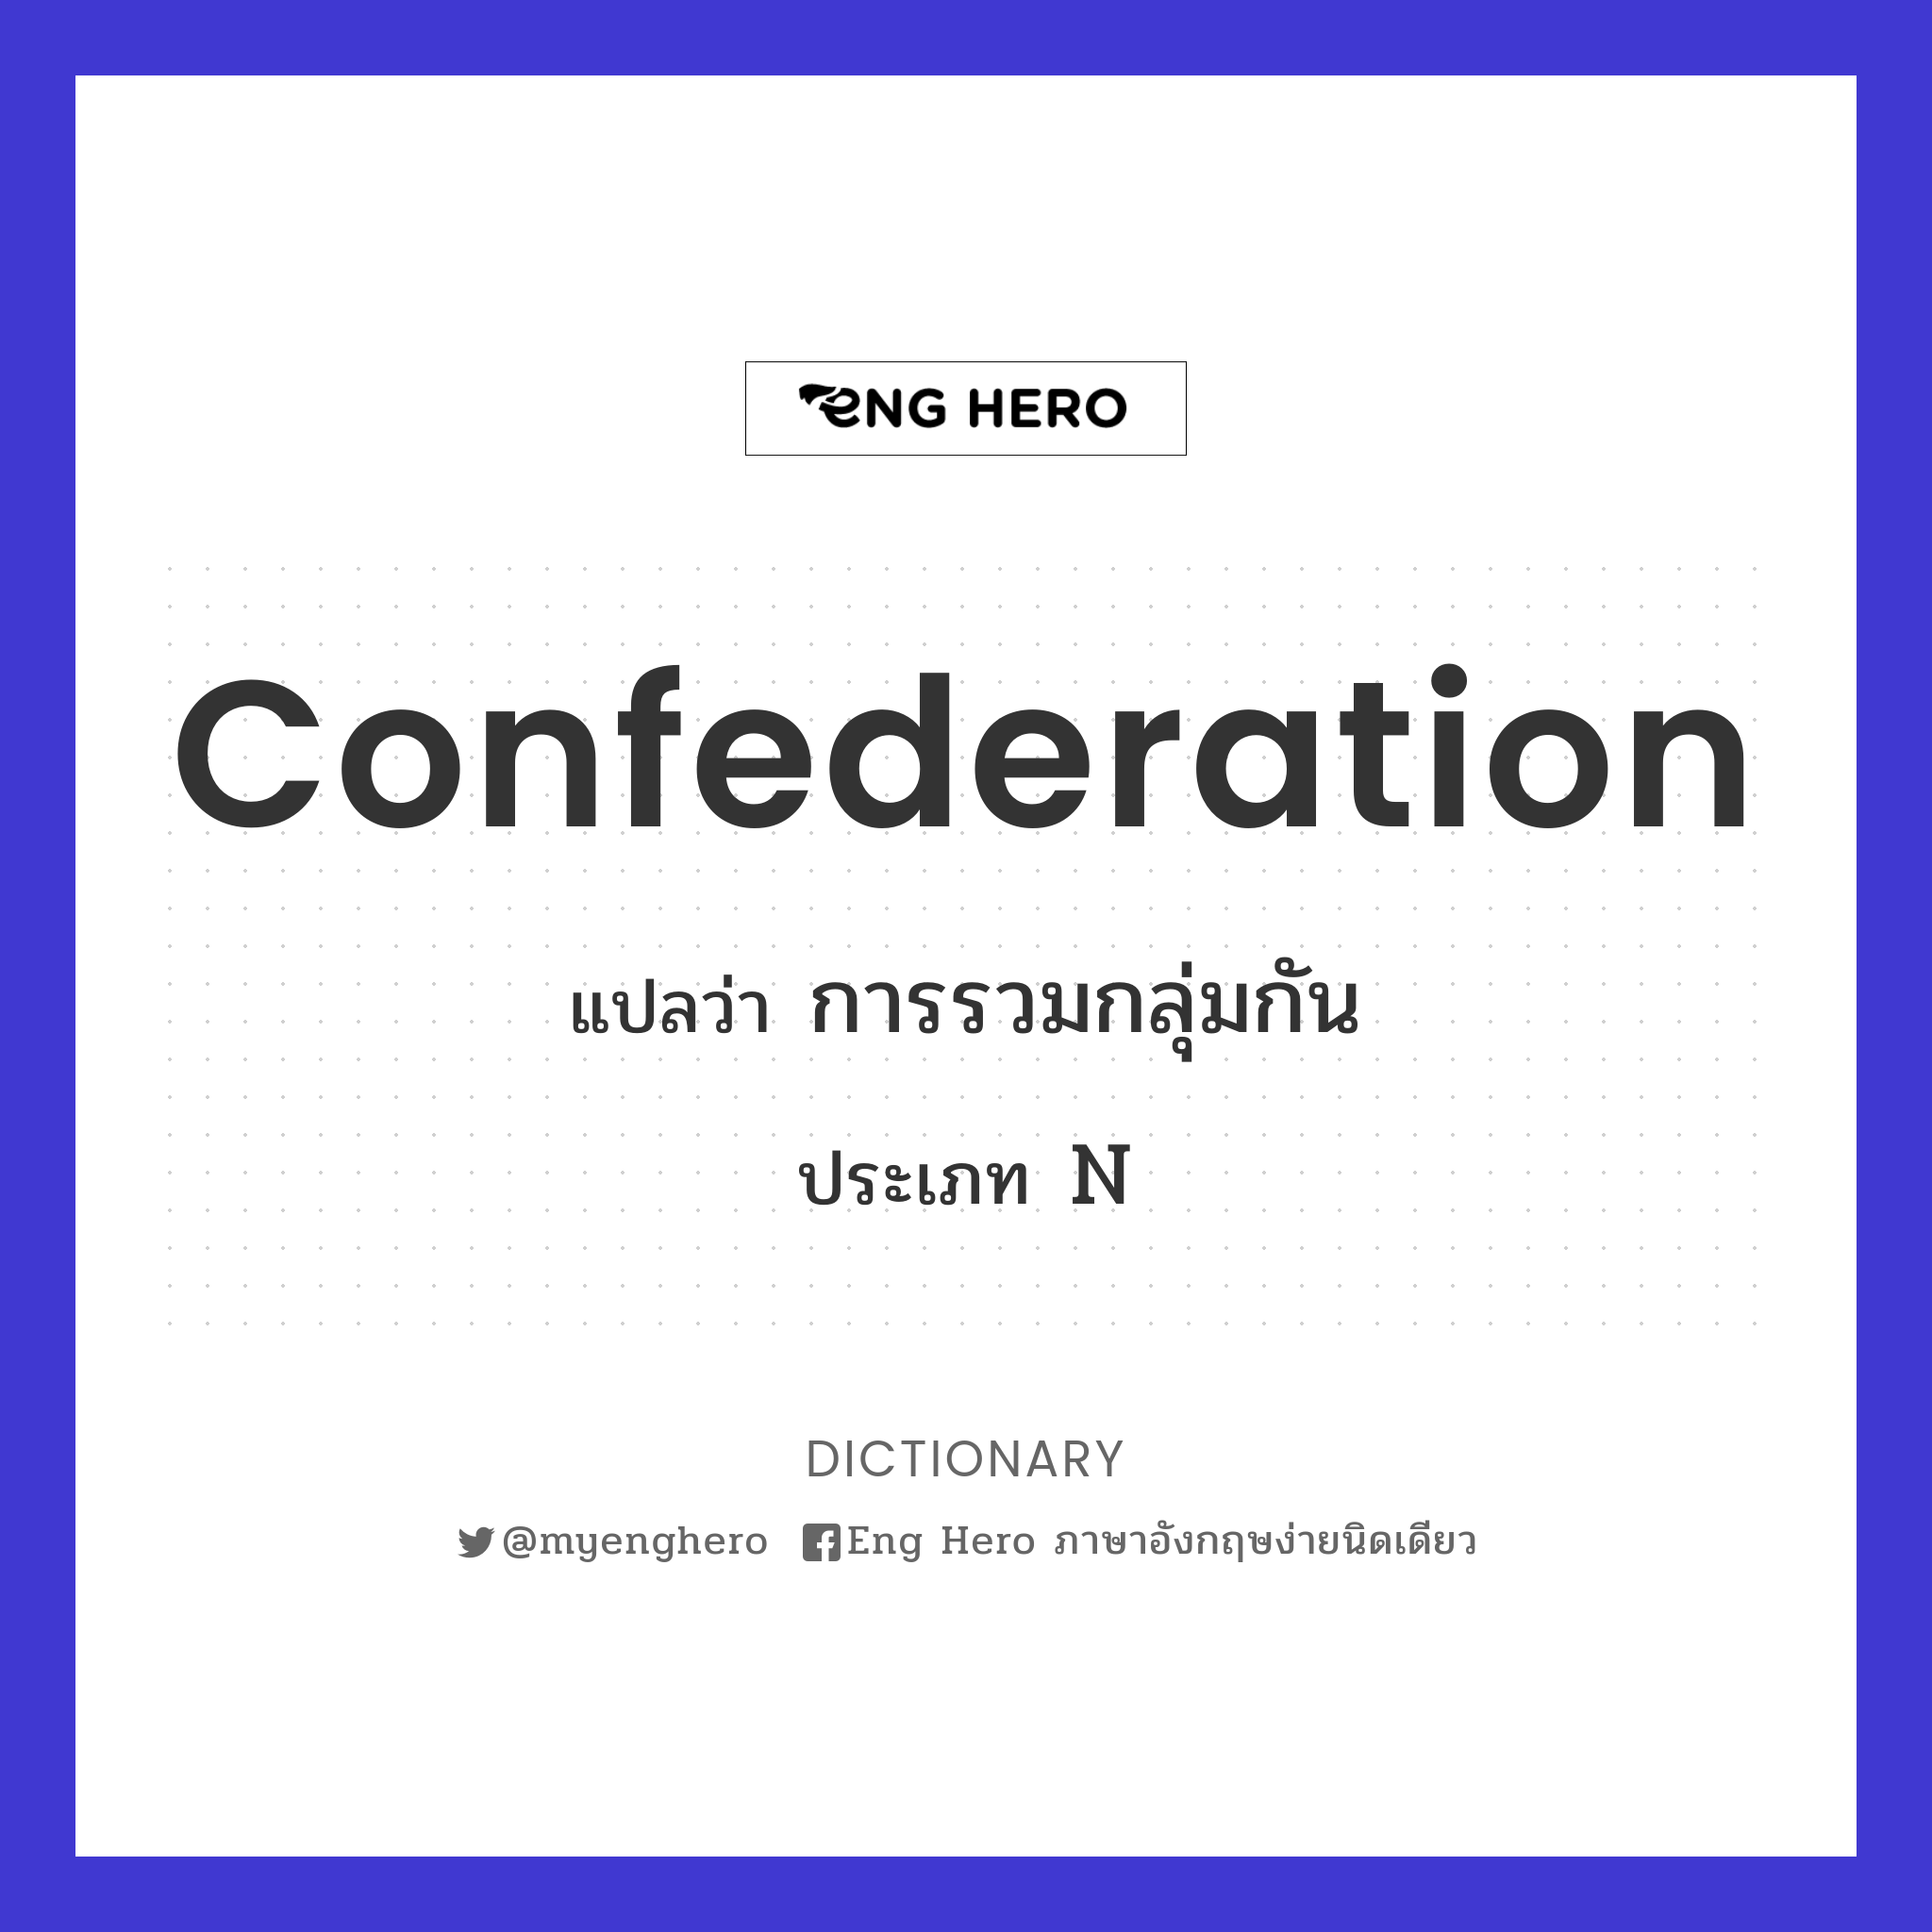 confederation